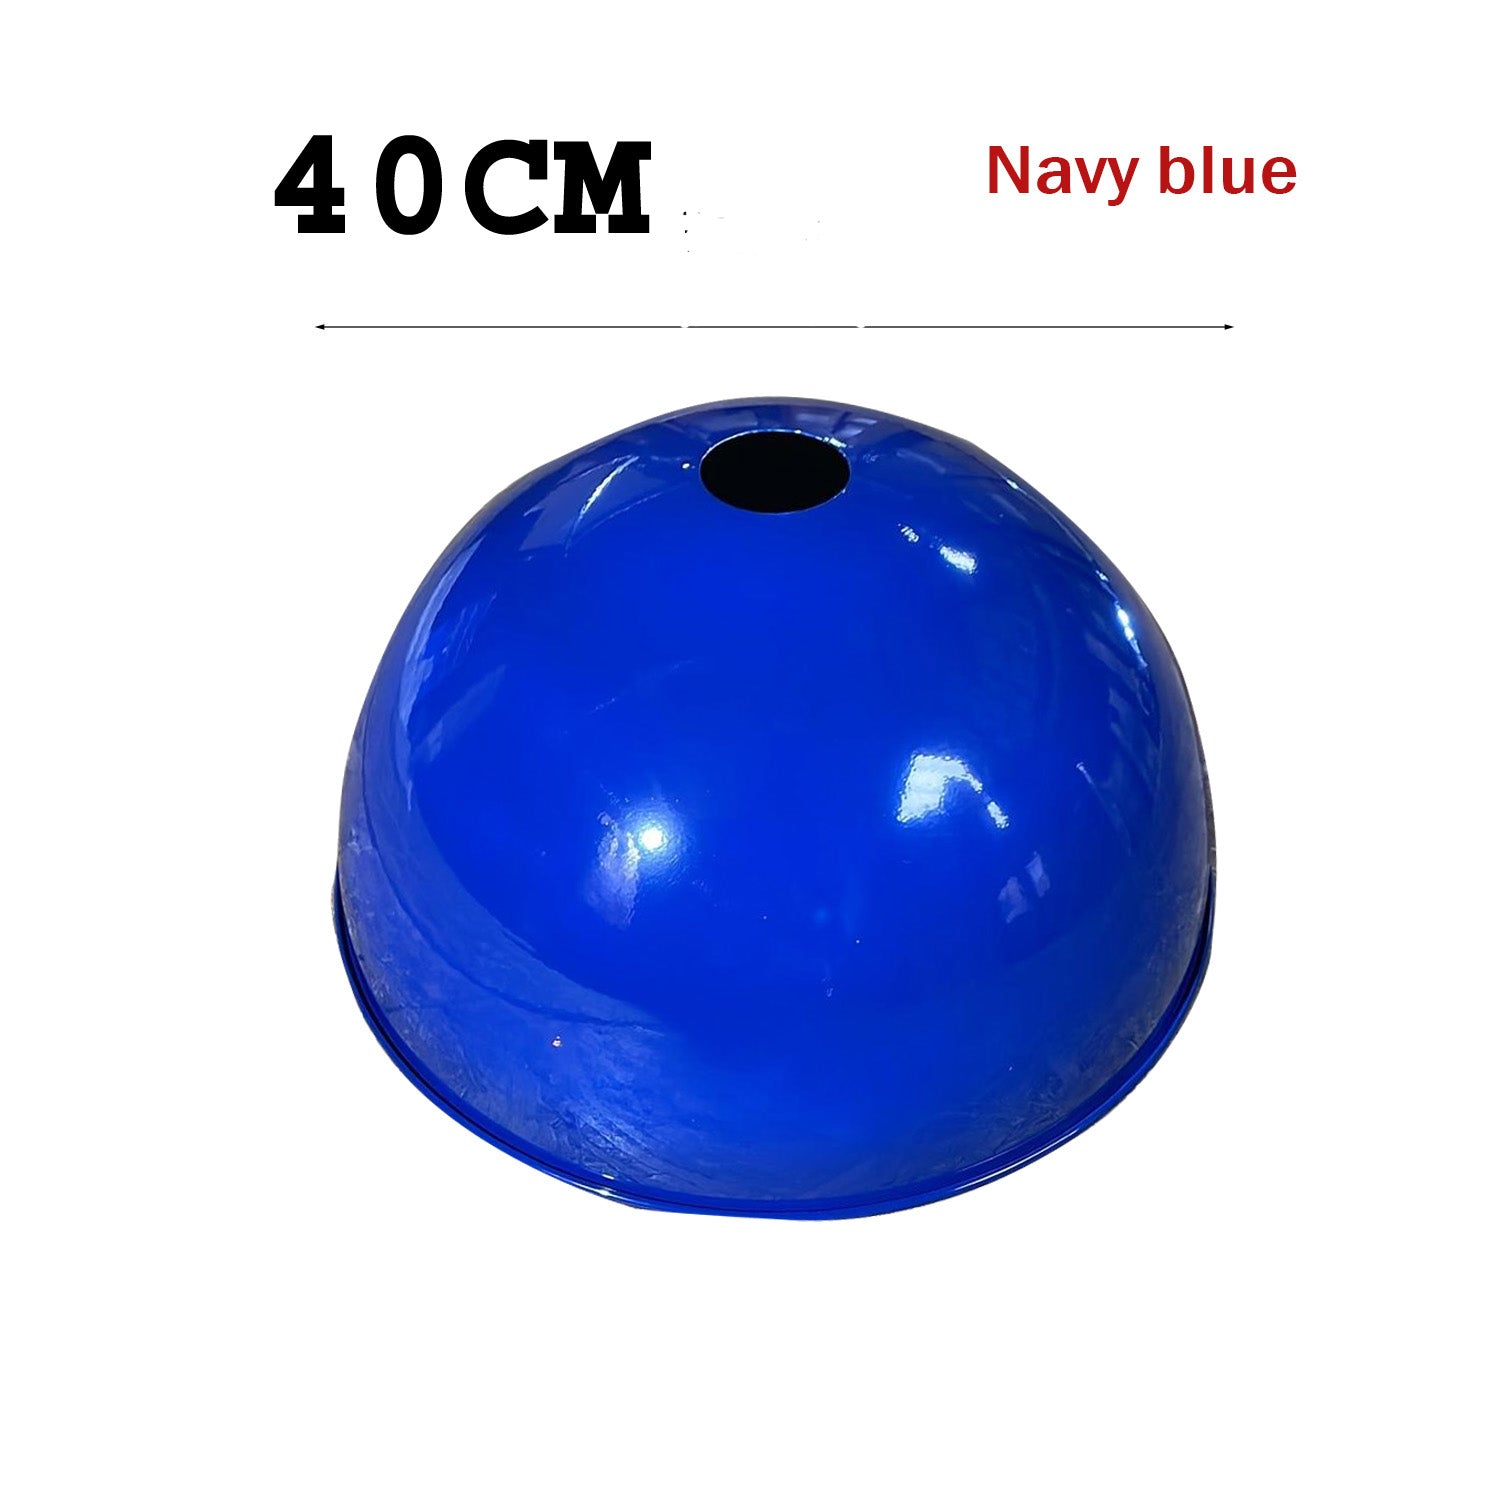 Light shade - Navy blue